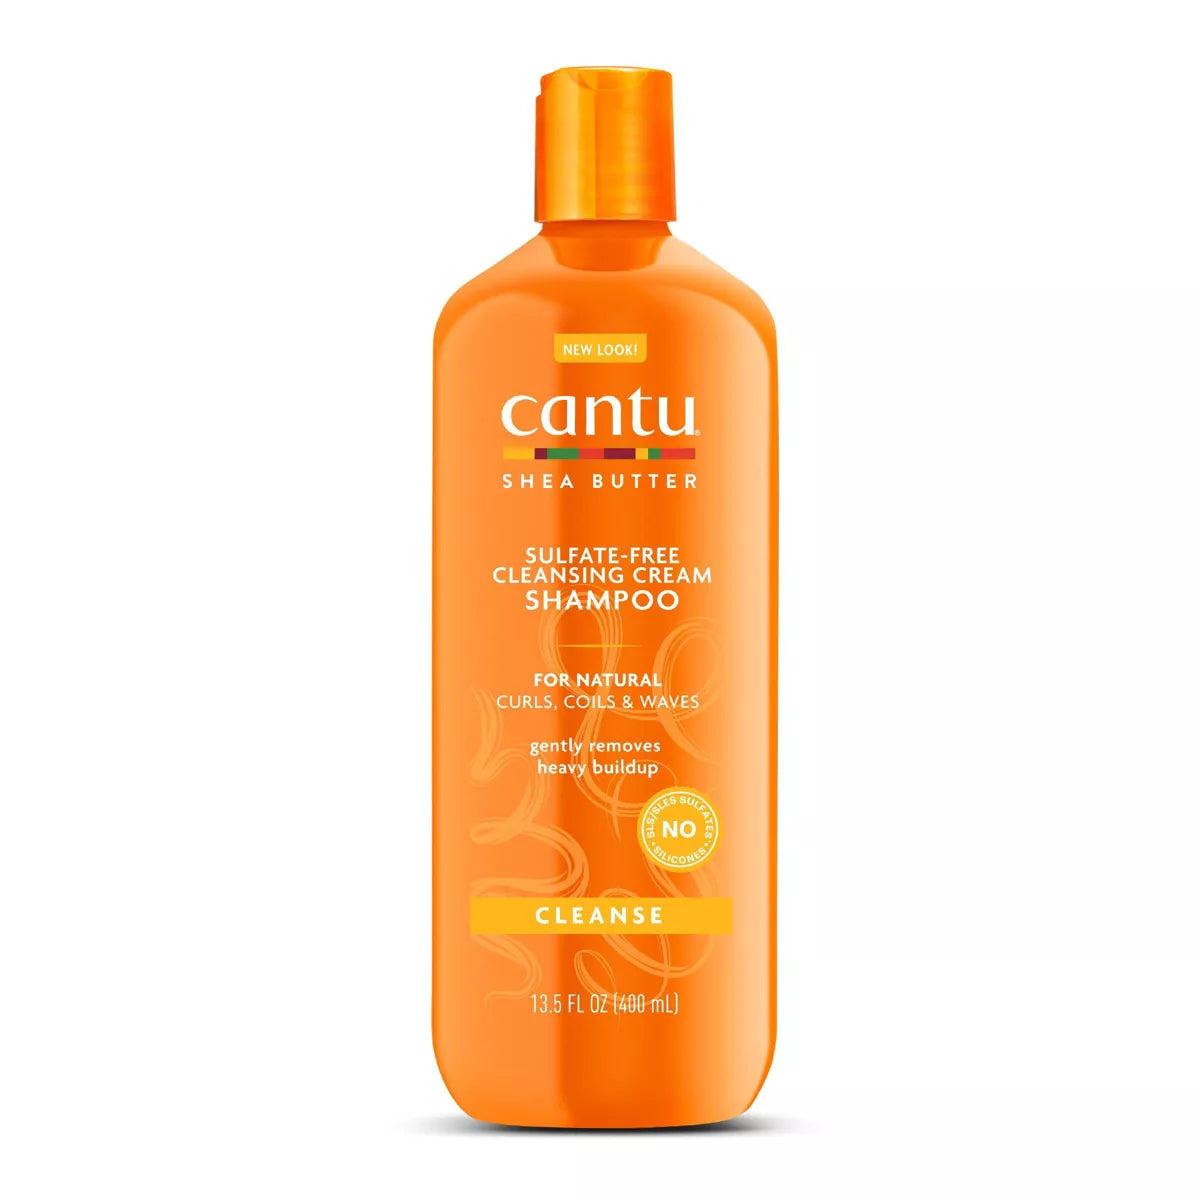 Cantu Sulfate-Free Cleansing Cream Shampoo 400 ml